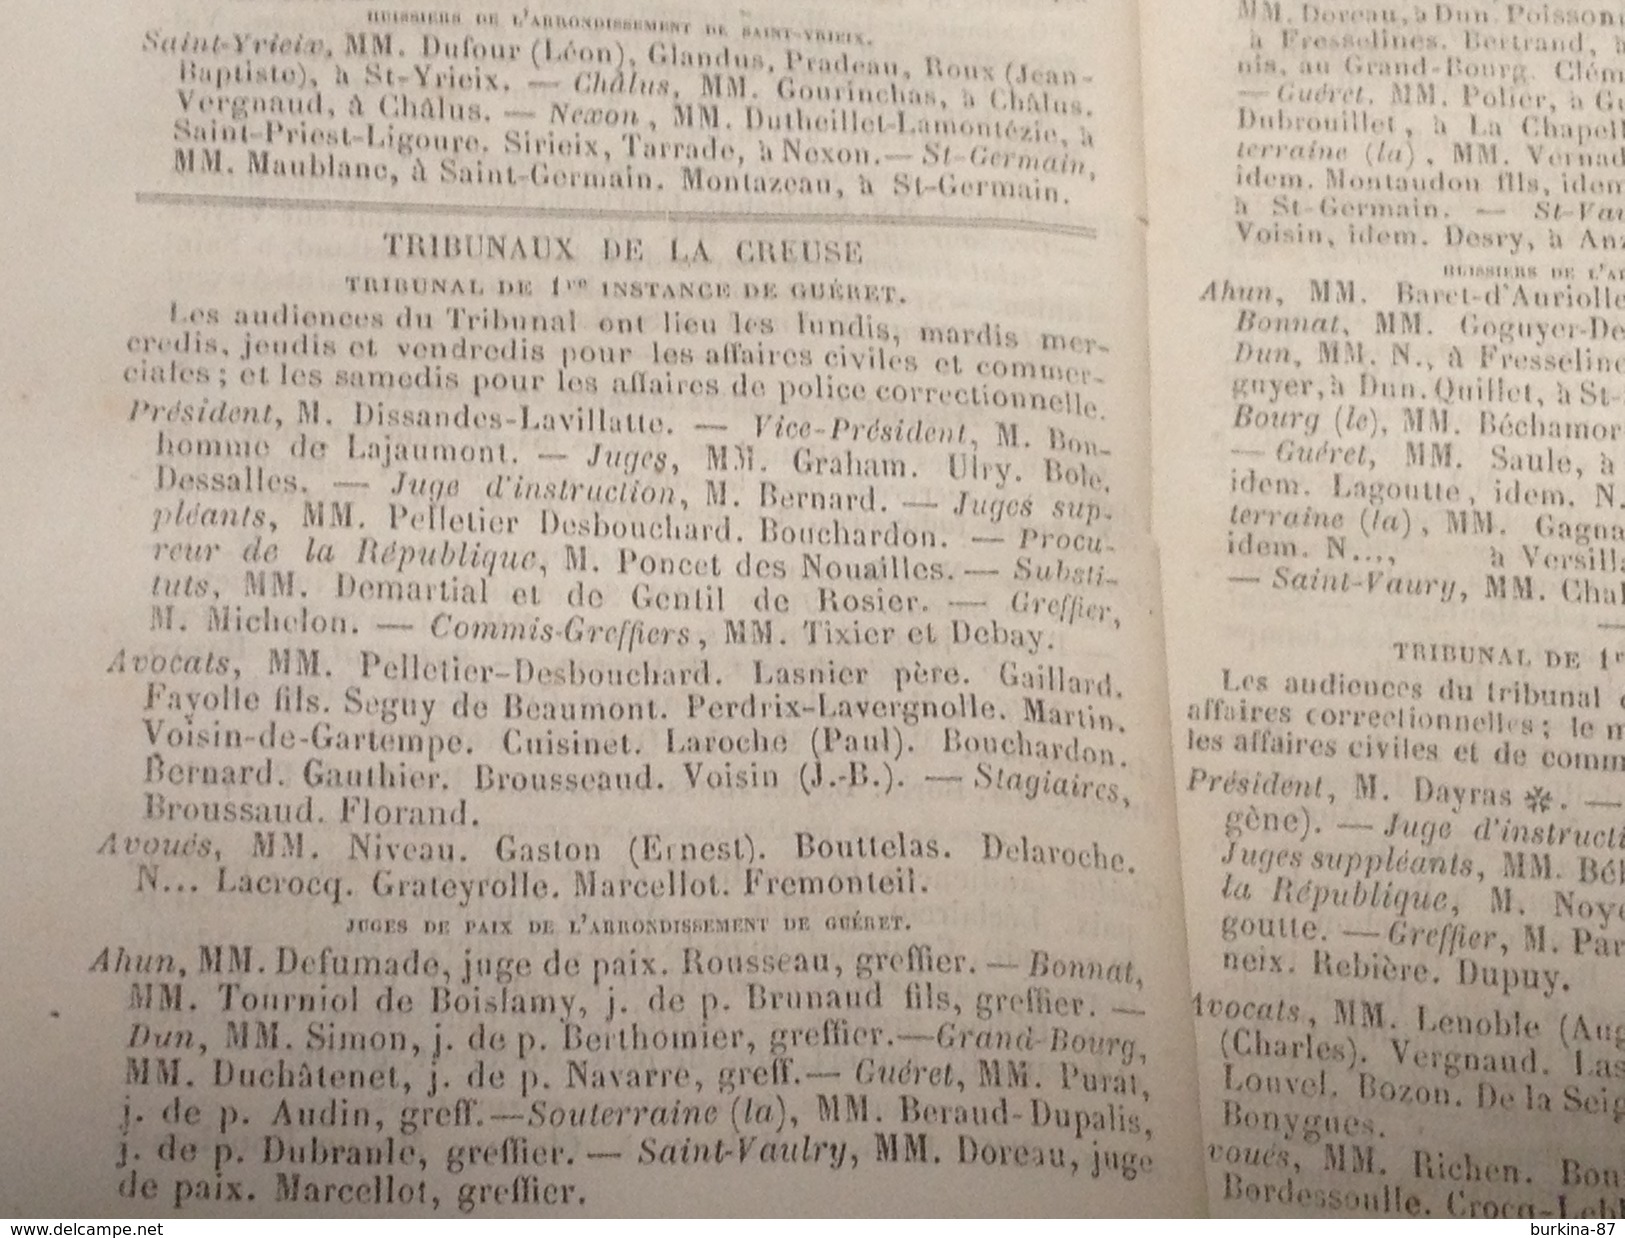 ALMANACH LIMOUSIN , 1874, Diocèse de Limoges,296 PAGES